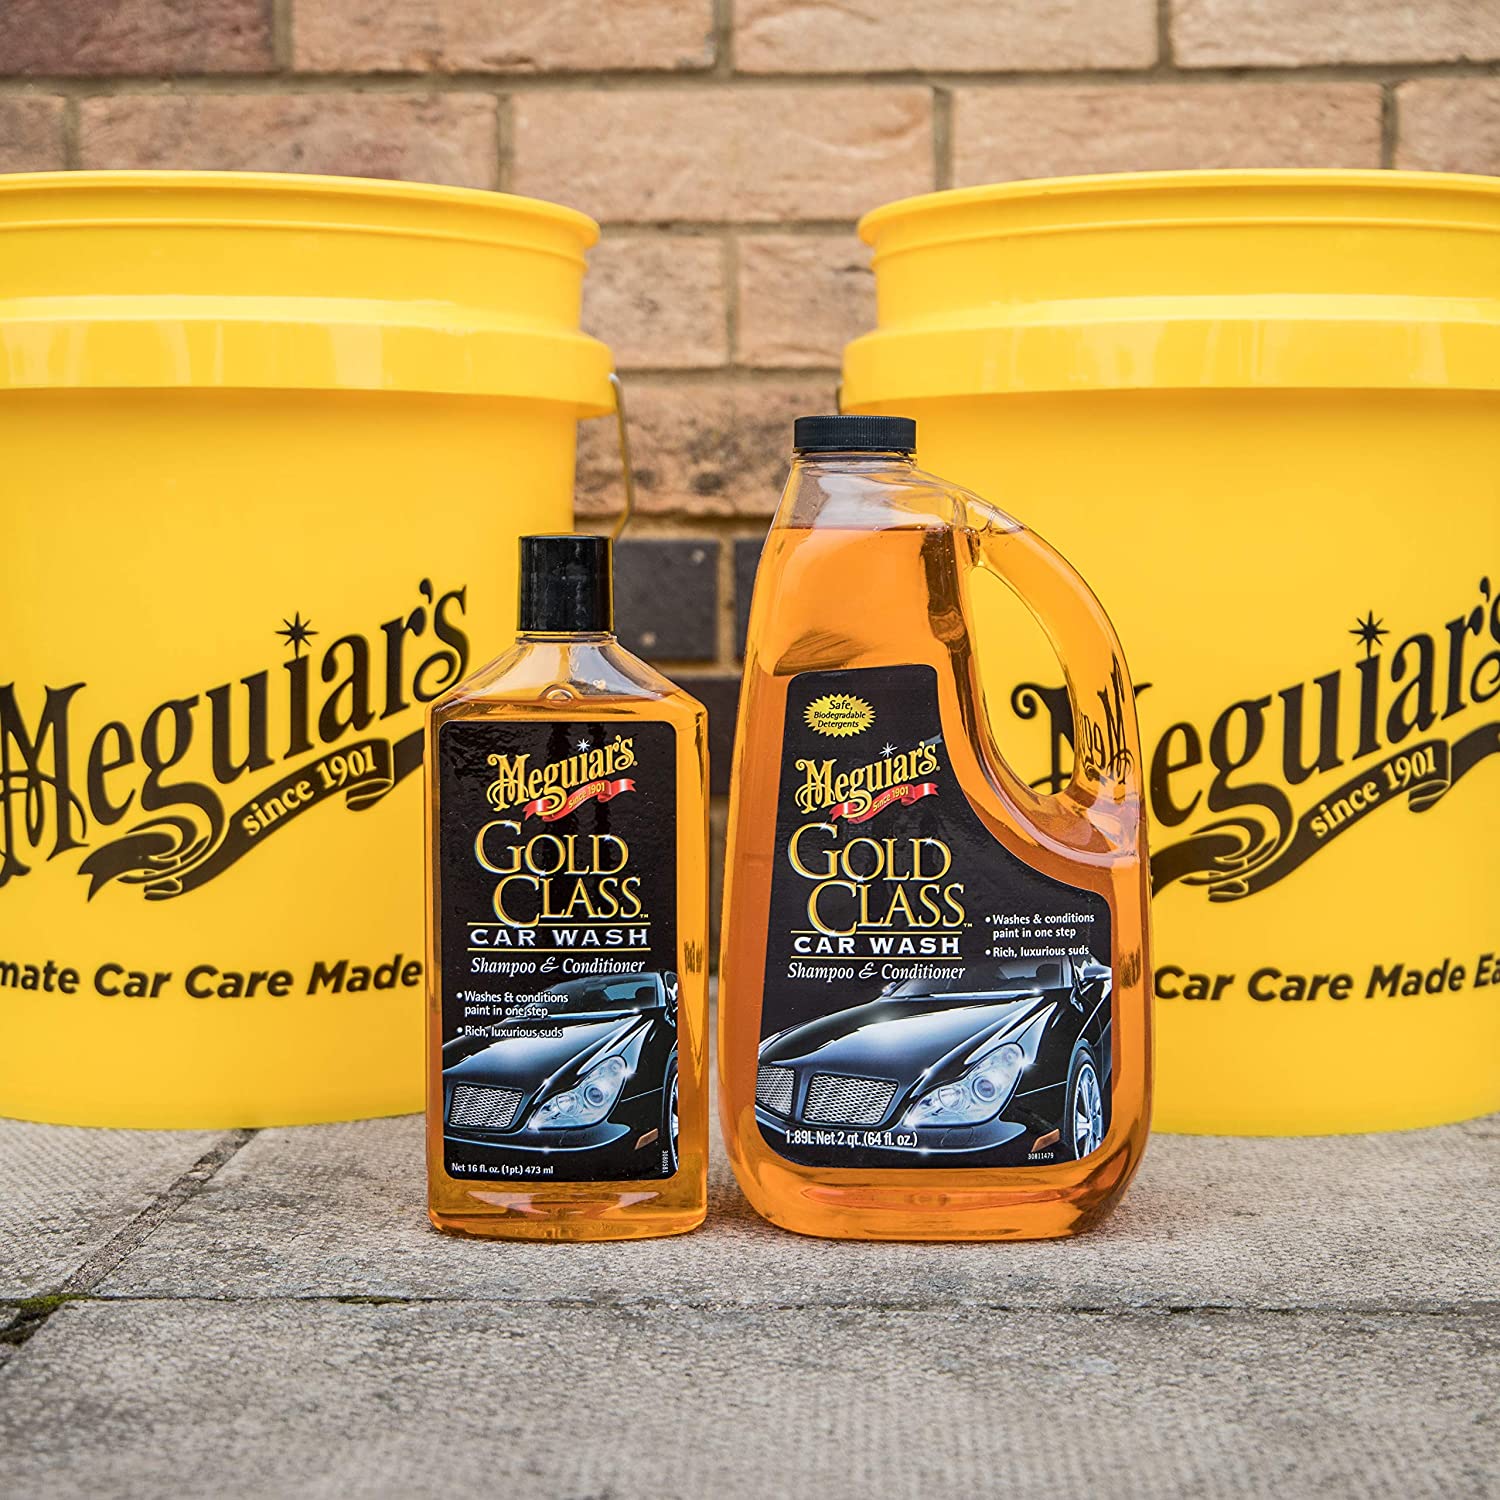 Meguiar's Gold Class Car Wash Shampoo & Conditioner  - 64 fl oz bottle